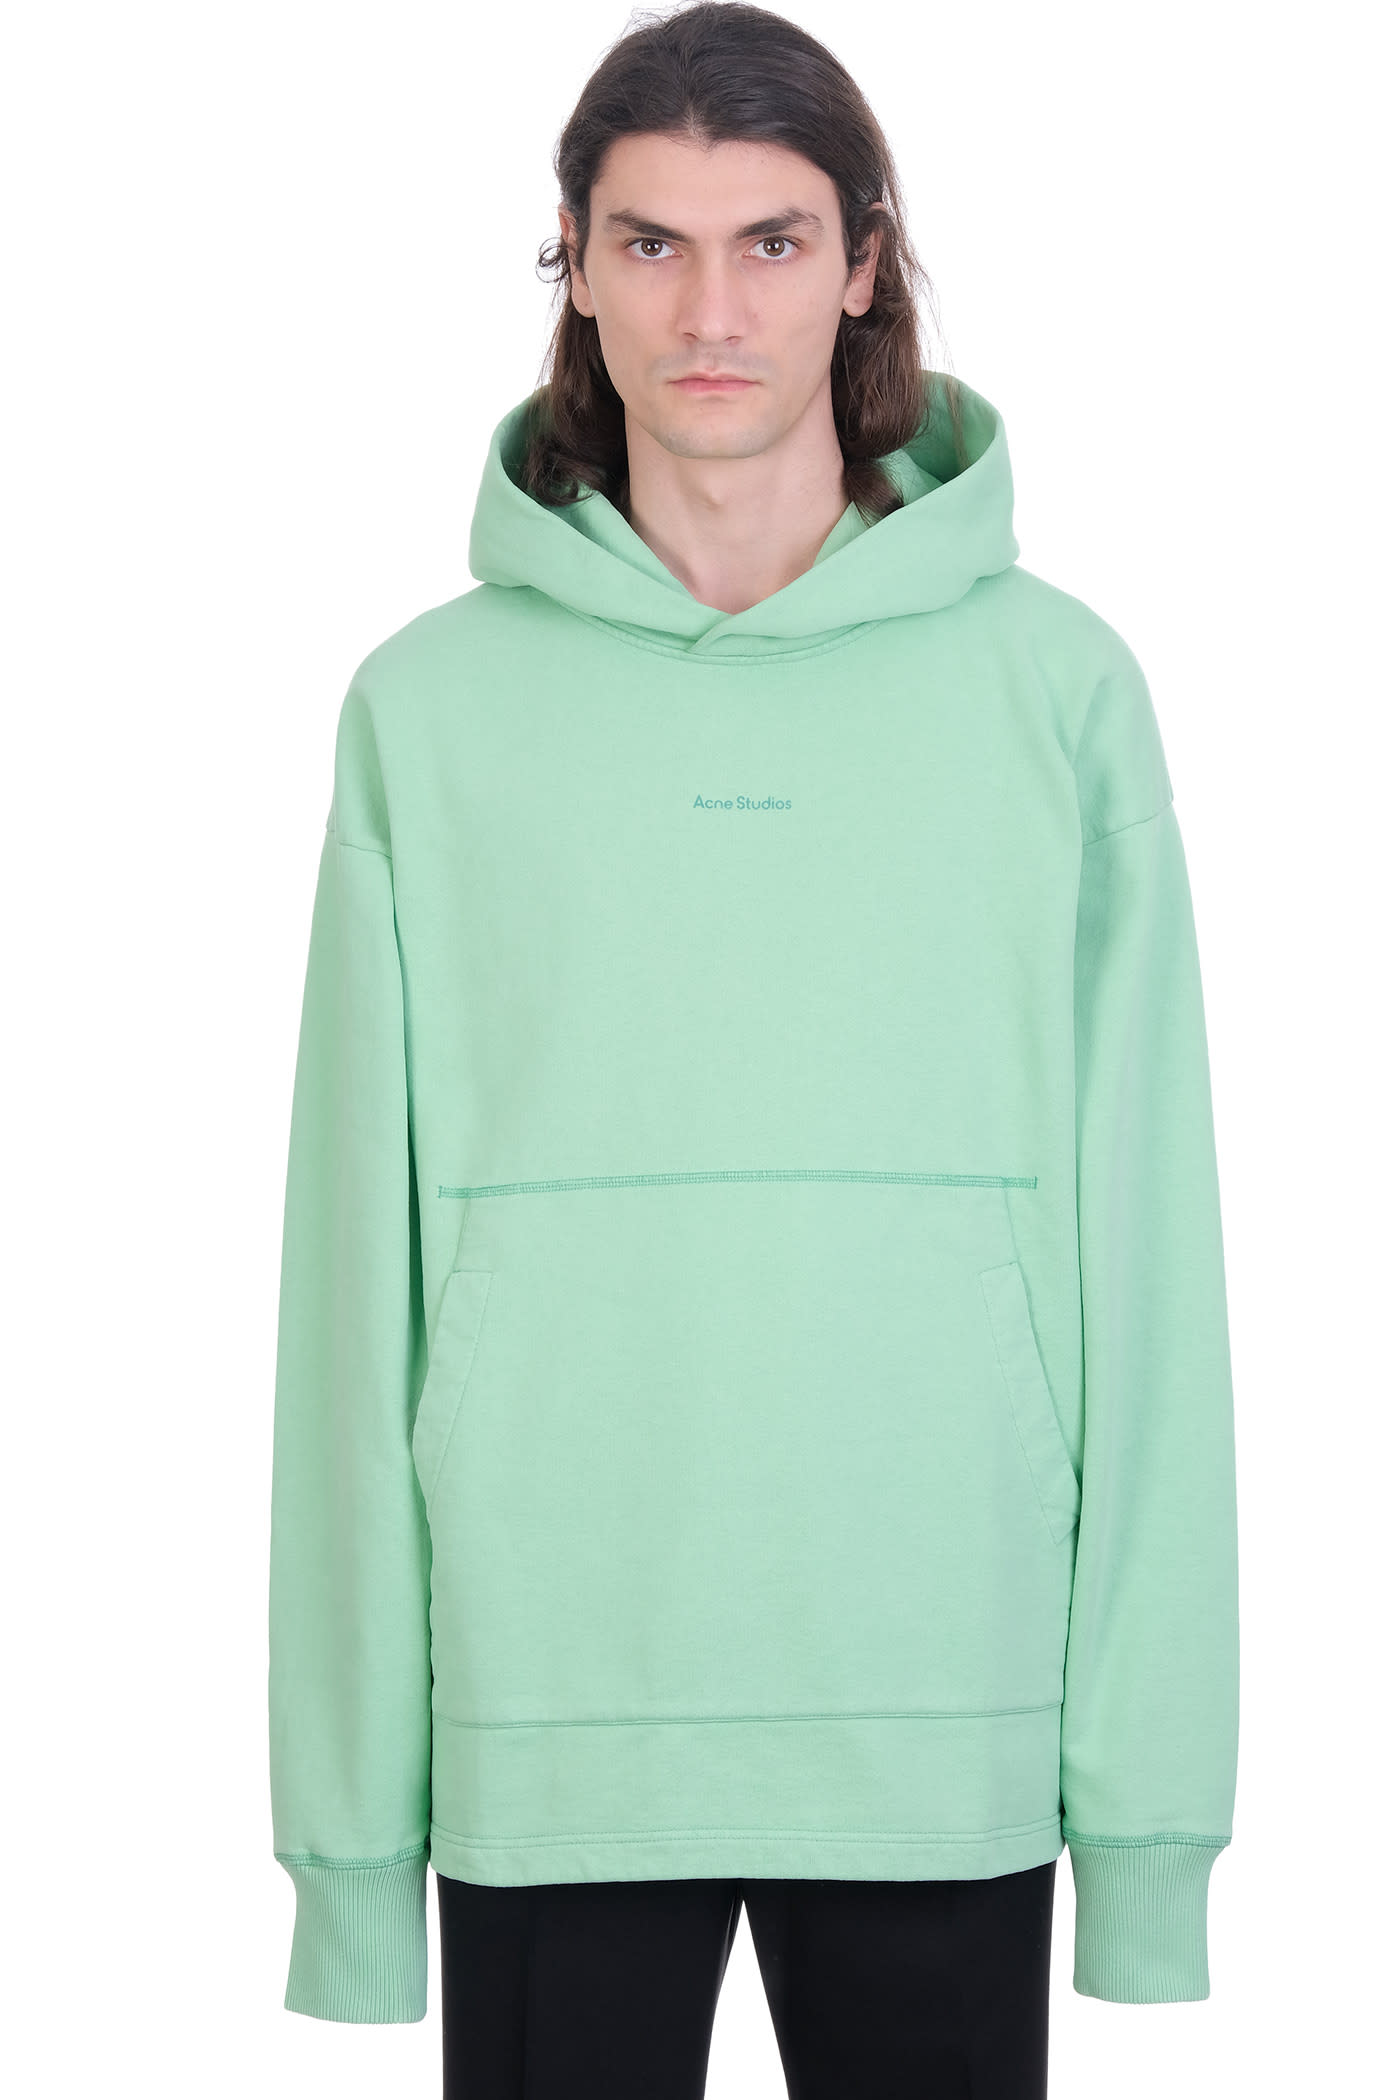 Acne Studios Frankin H Stamp Sweatshirt In Green Cotton